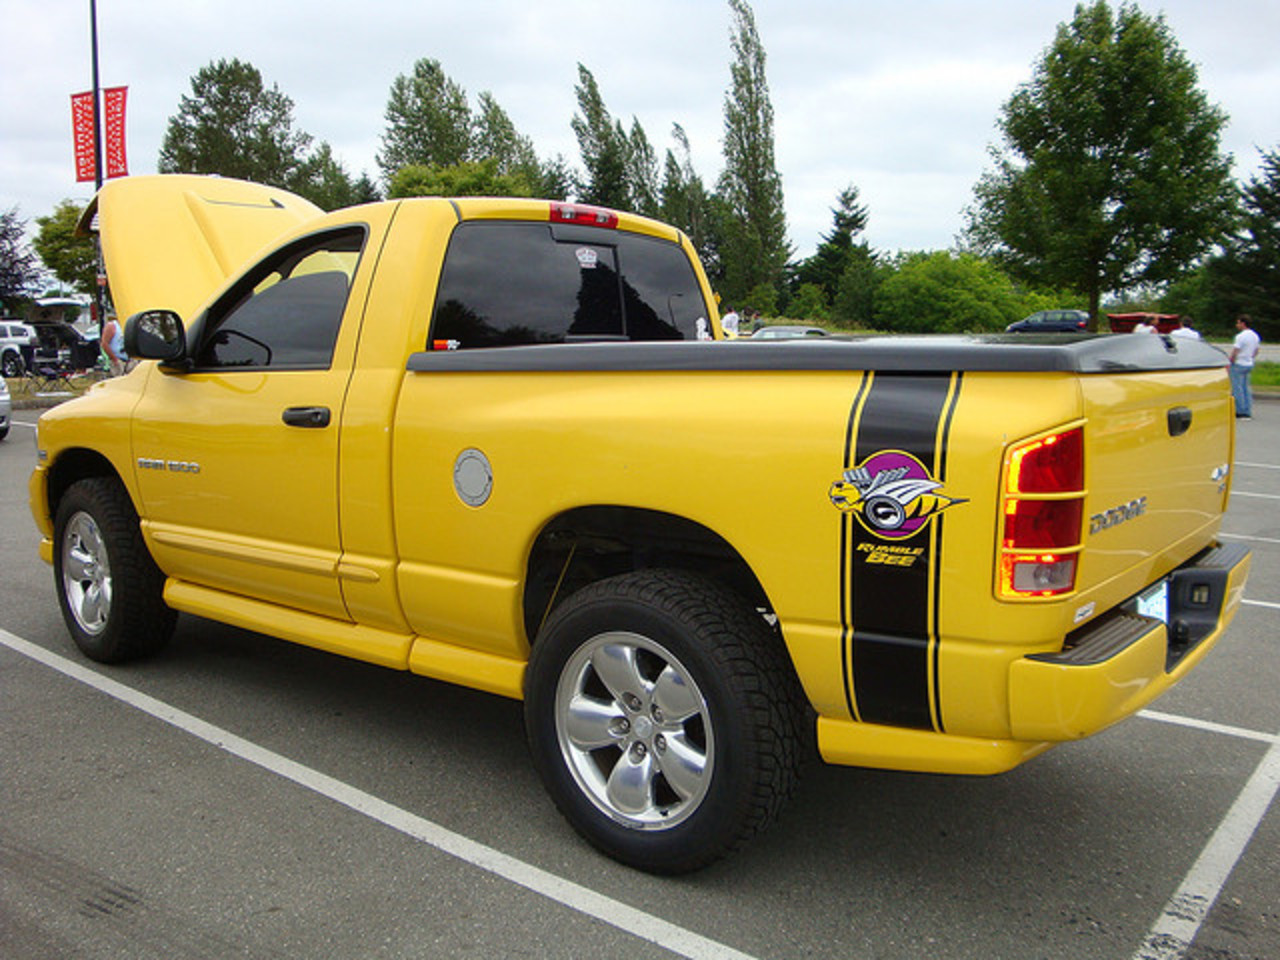 2005 Dodge Ram 1500 "Rumble Bee" Pickup Truck | Flickr - Photo ...